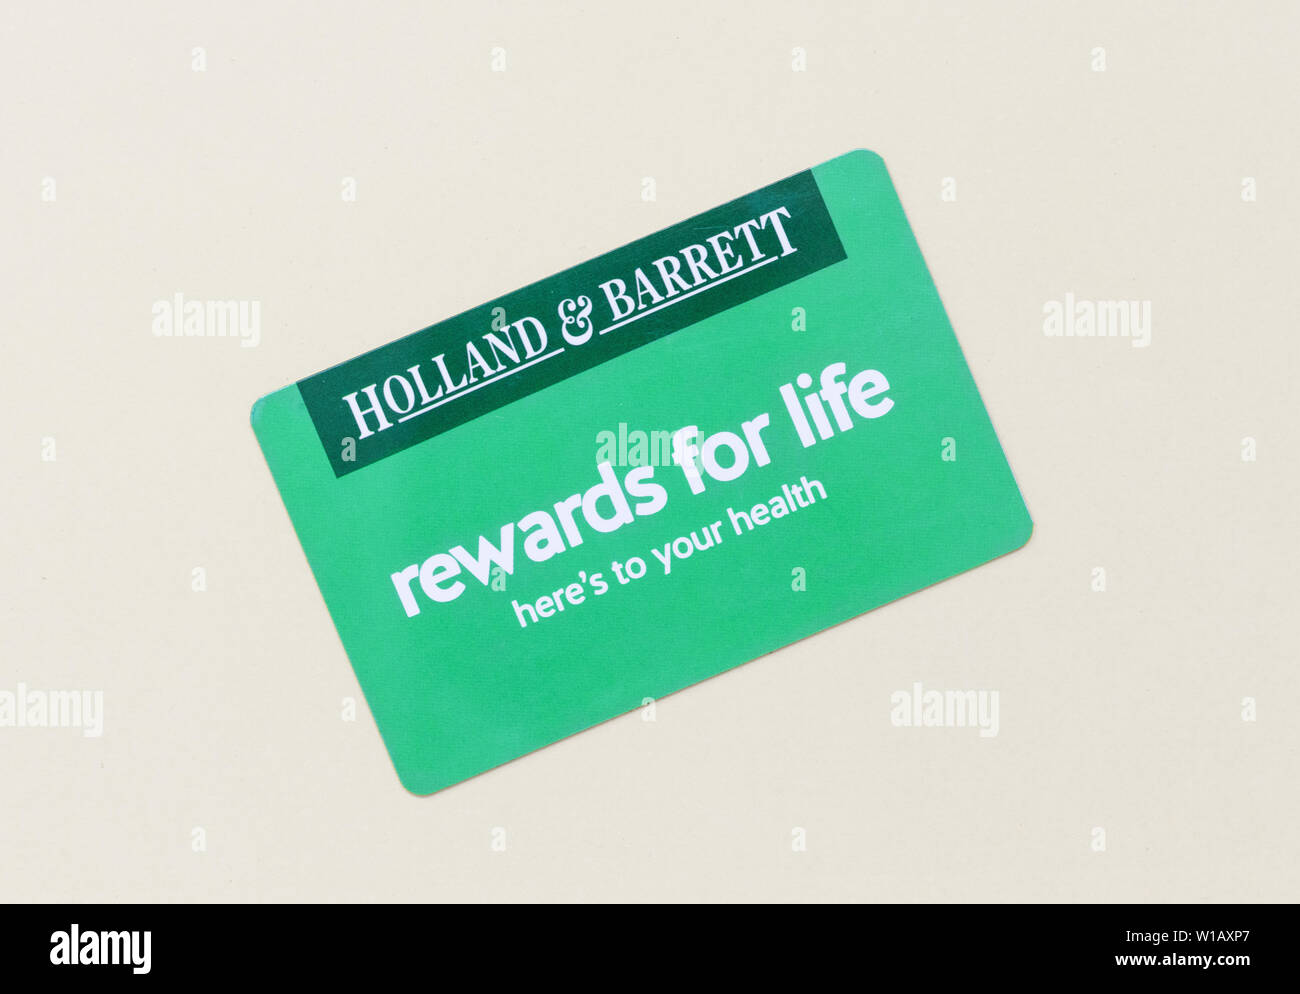 London/UK - 1. Juli 2019 - Holland und Barrett kunden Bonuskarte. Holland & Barrett ist eine Kette von Naturkostläden mit über 1.300 Stockfoto